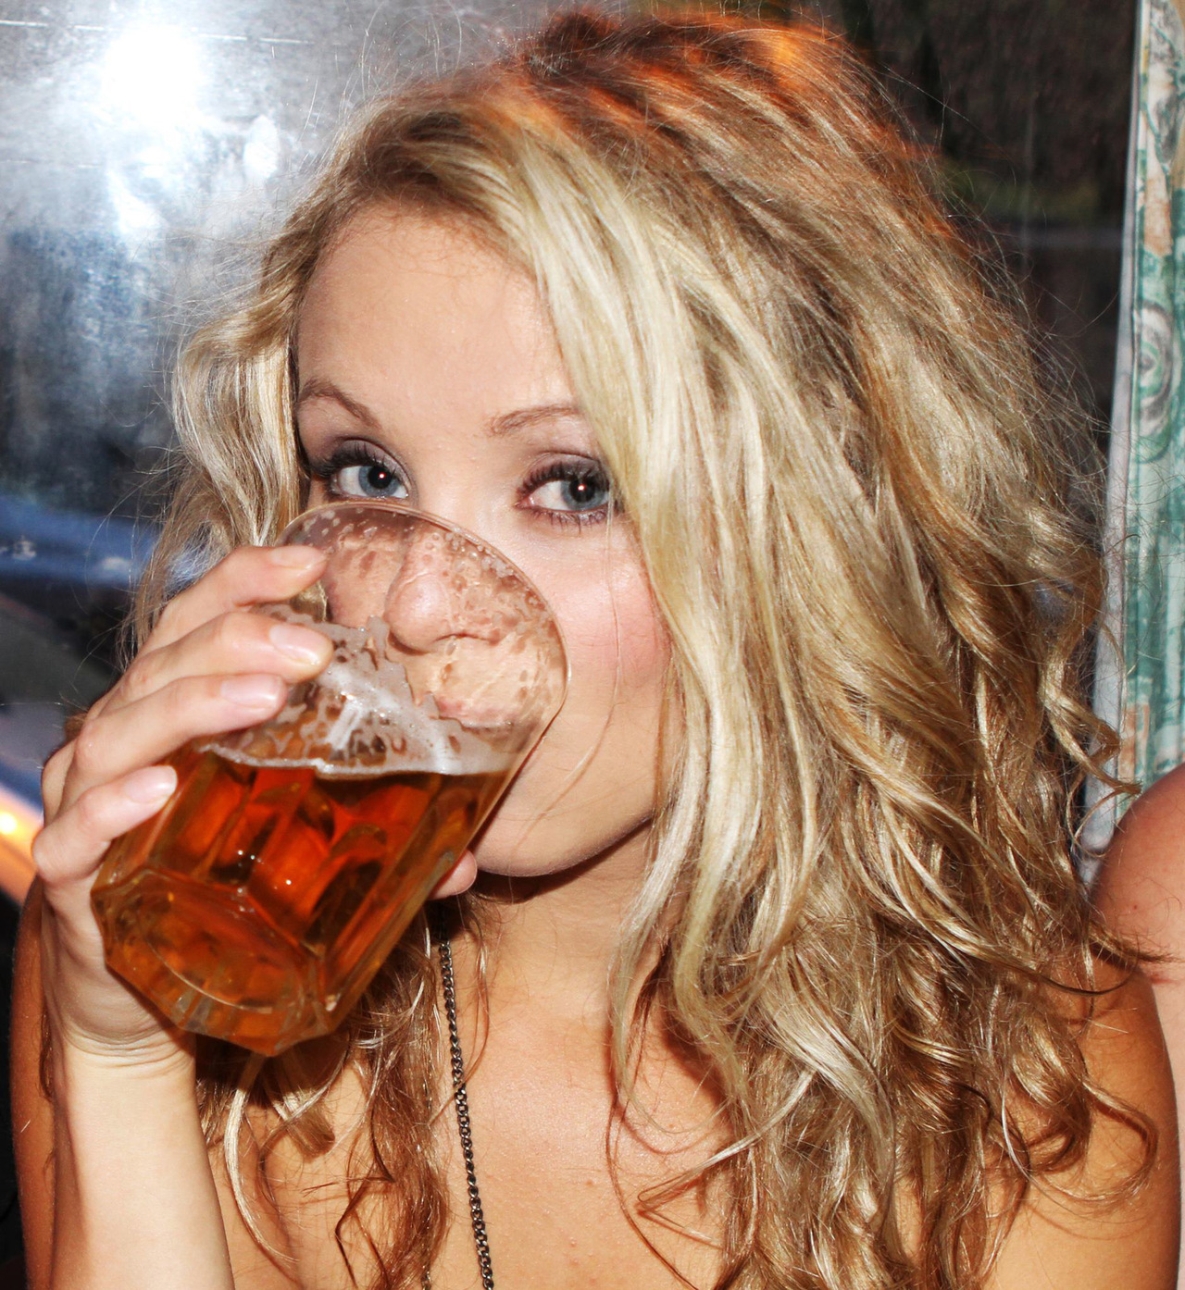 Jak pić piwo, żeby smakowało najlepiej? 